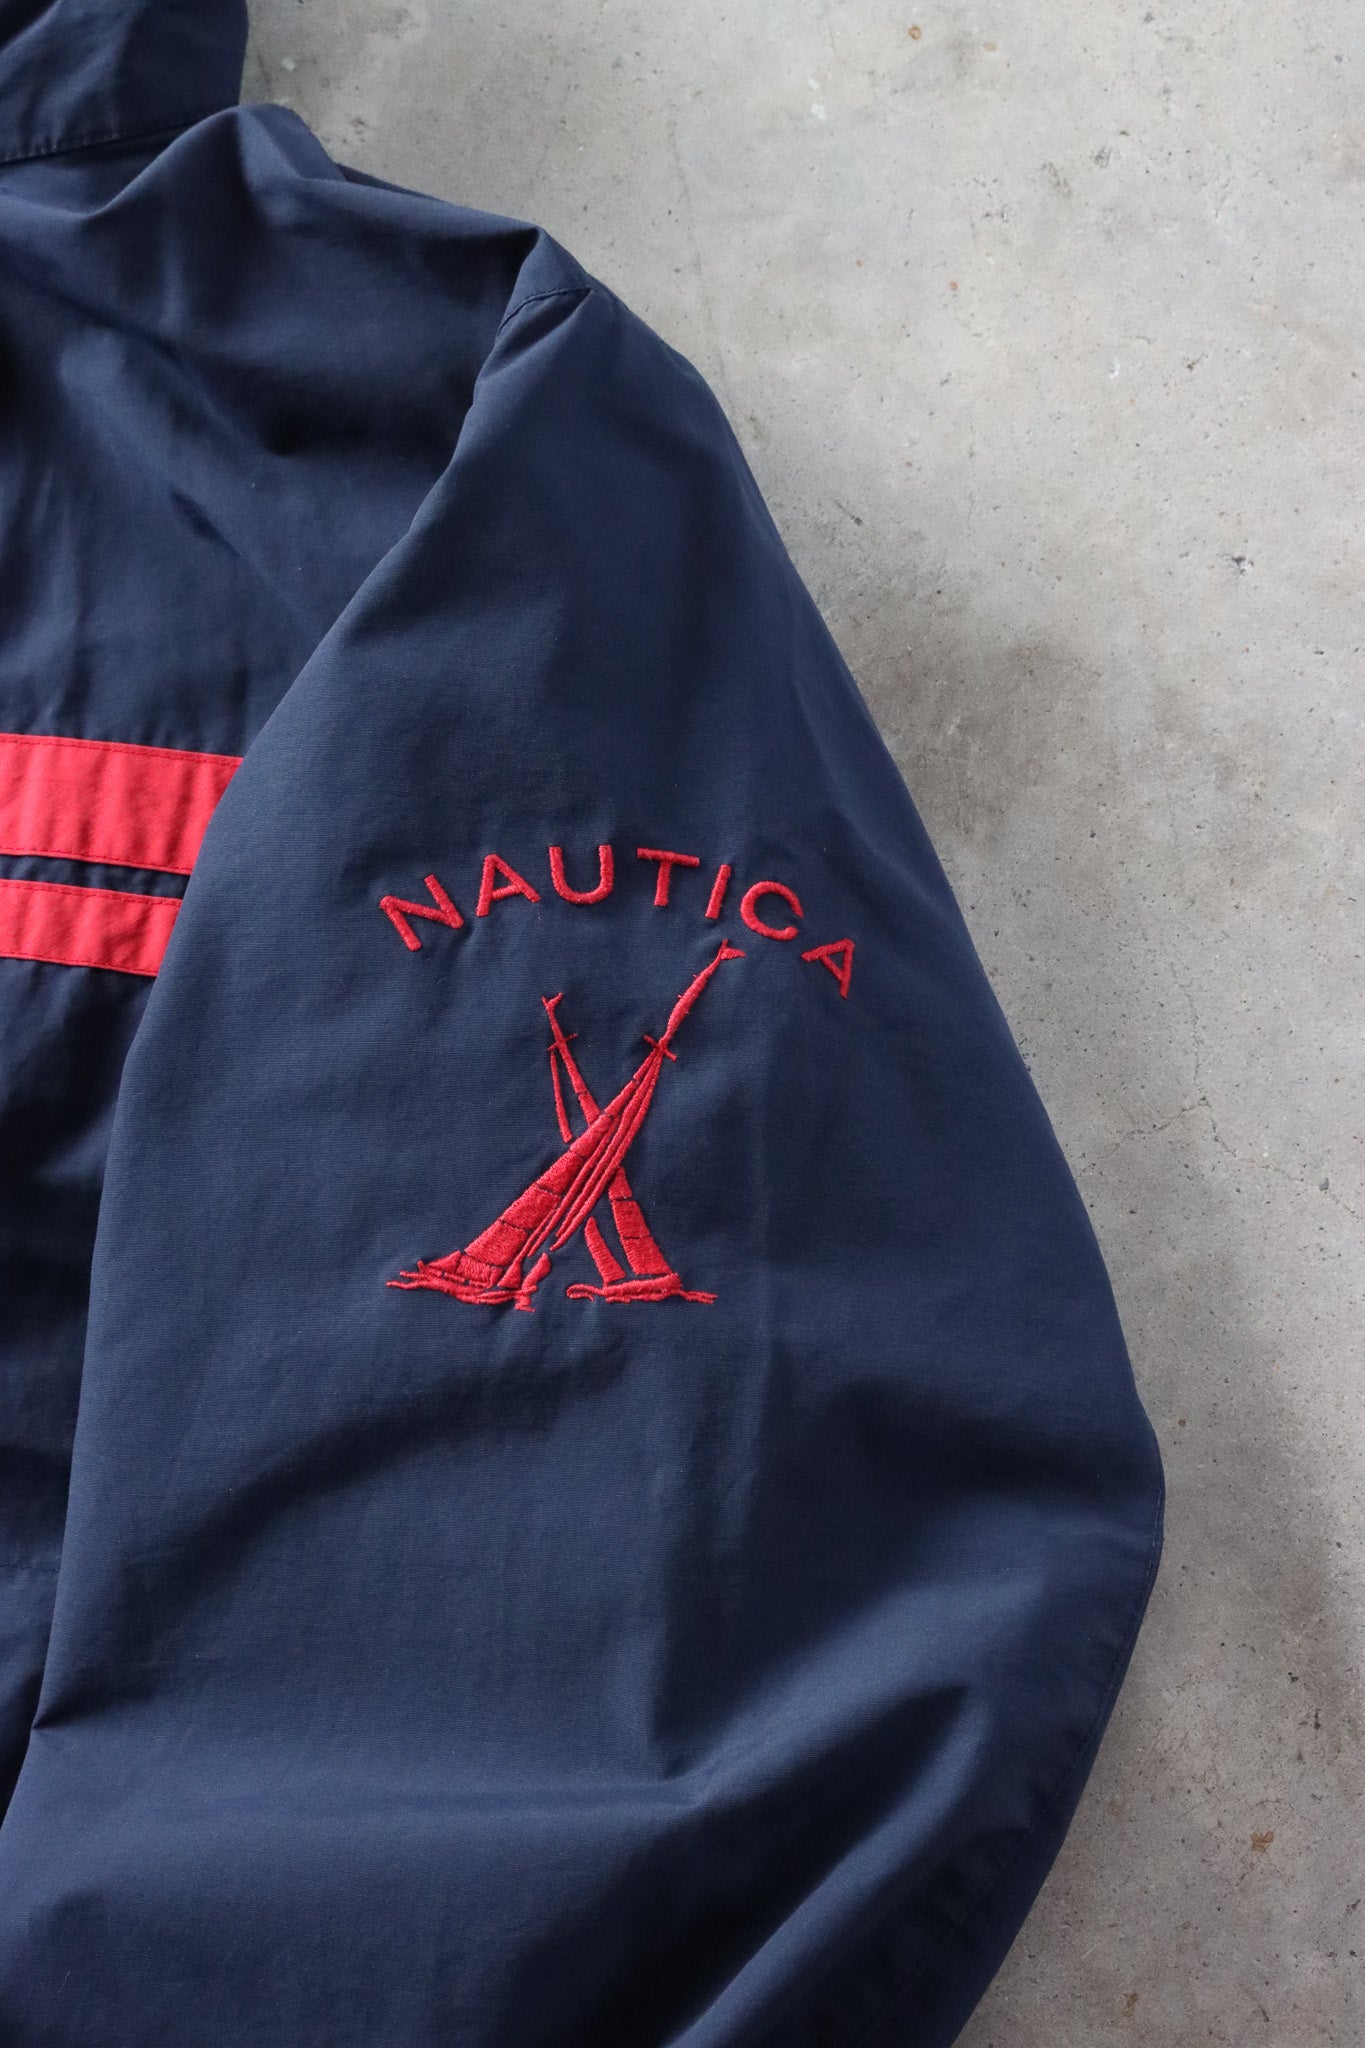 Vintage Nautica Jacket Medium